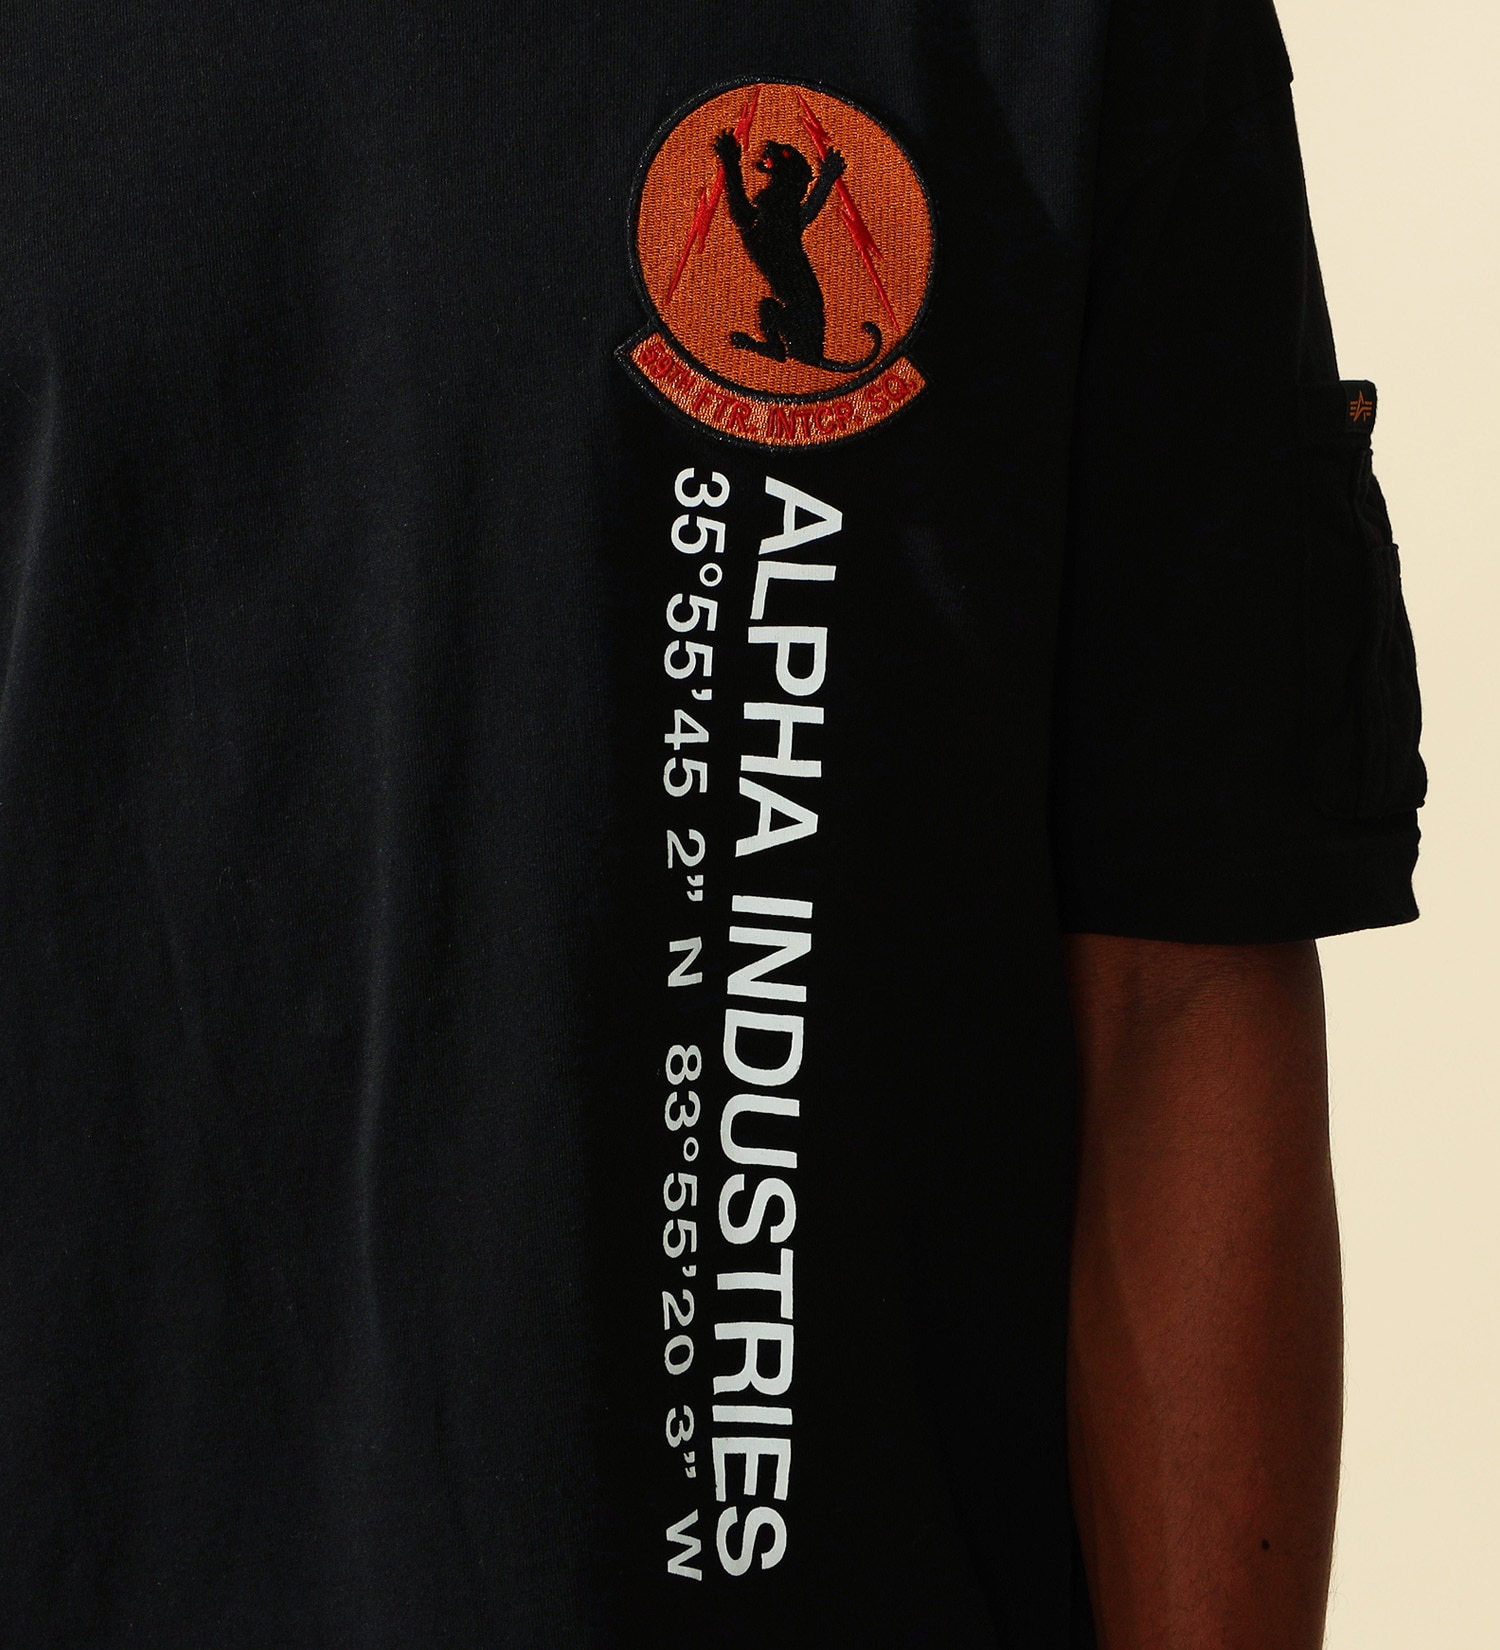 ALPHA(アルファ)のUSAF パッチプリントTシャツ 半袖|トップス/Tシャツ/カットソー/メンズ|ブラック